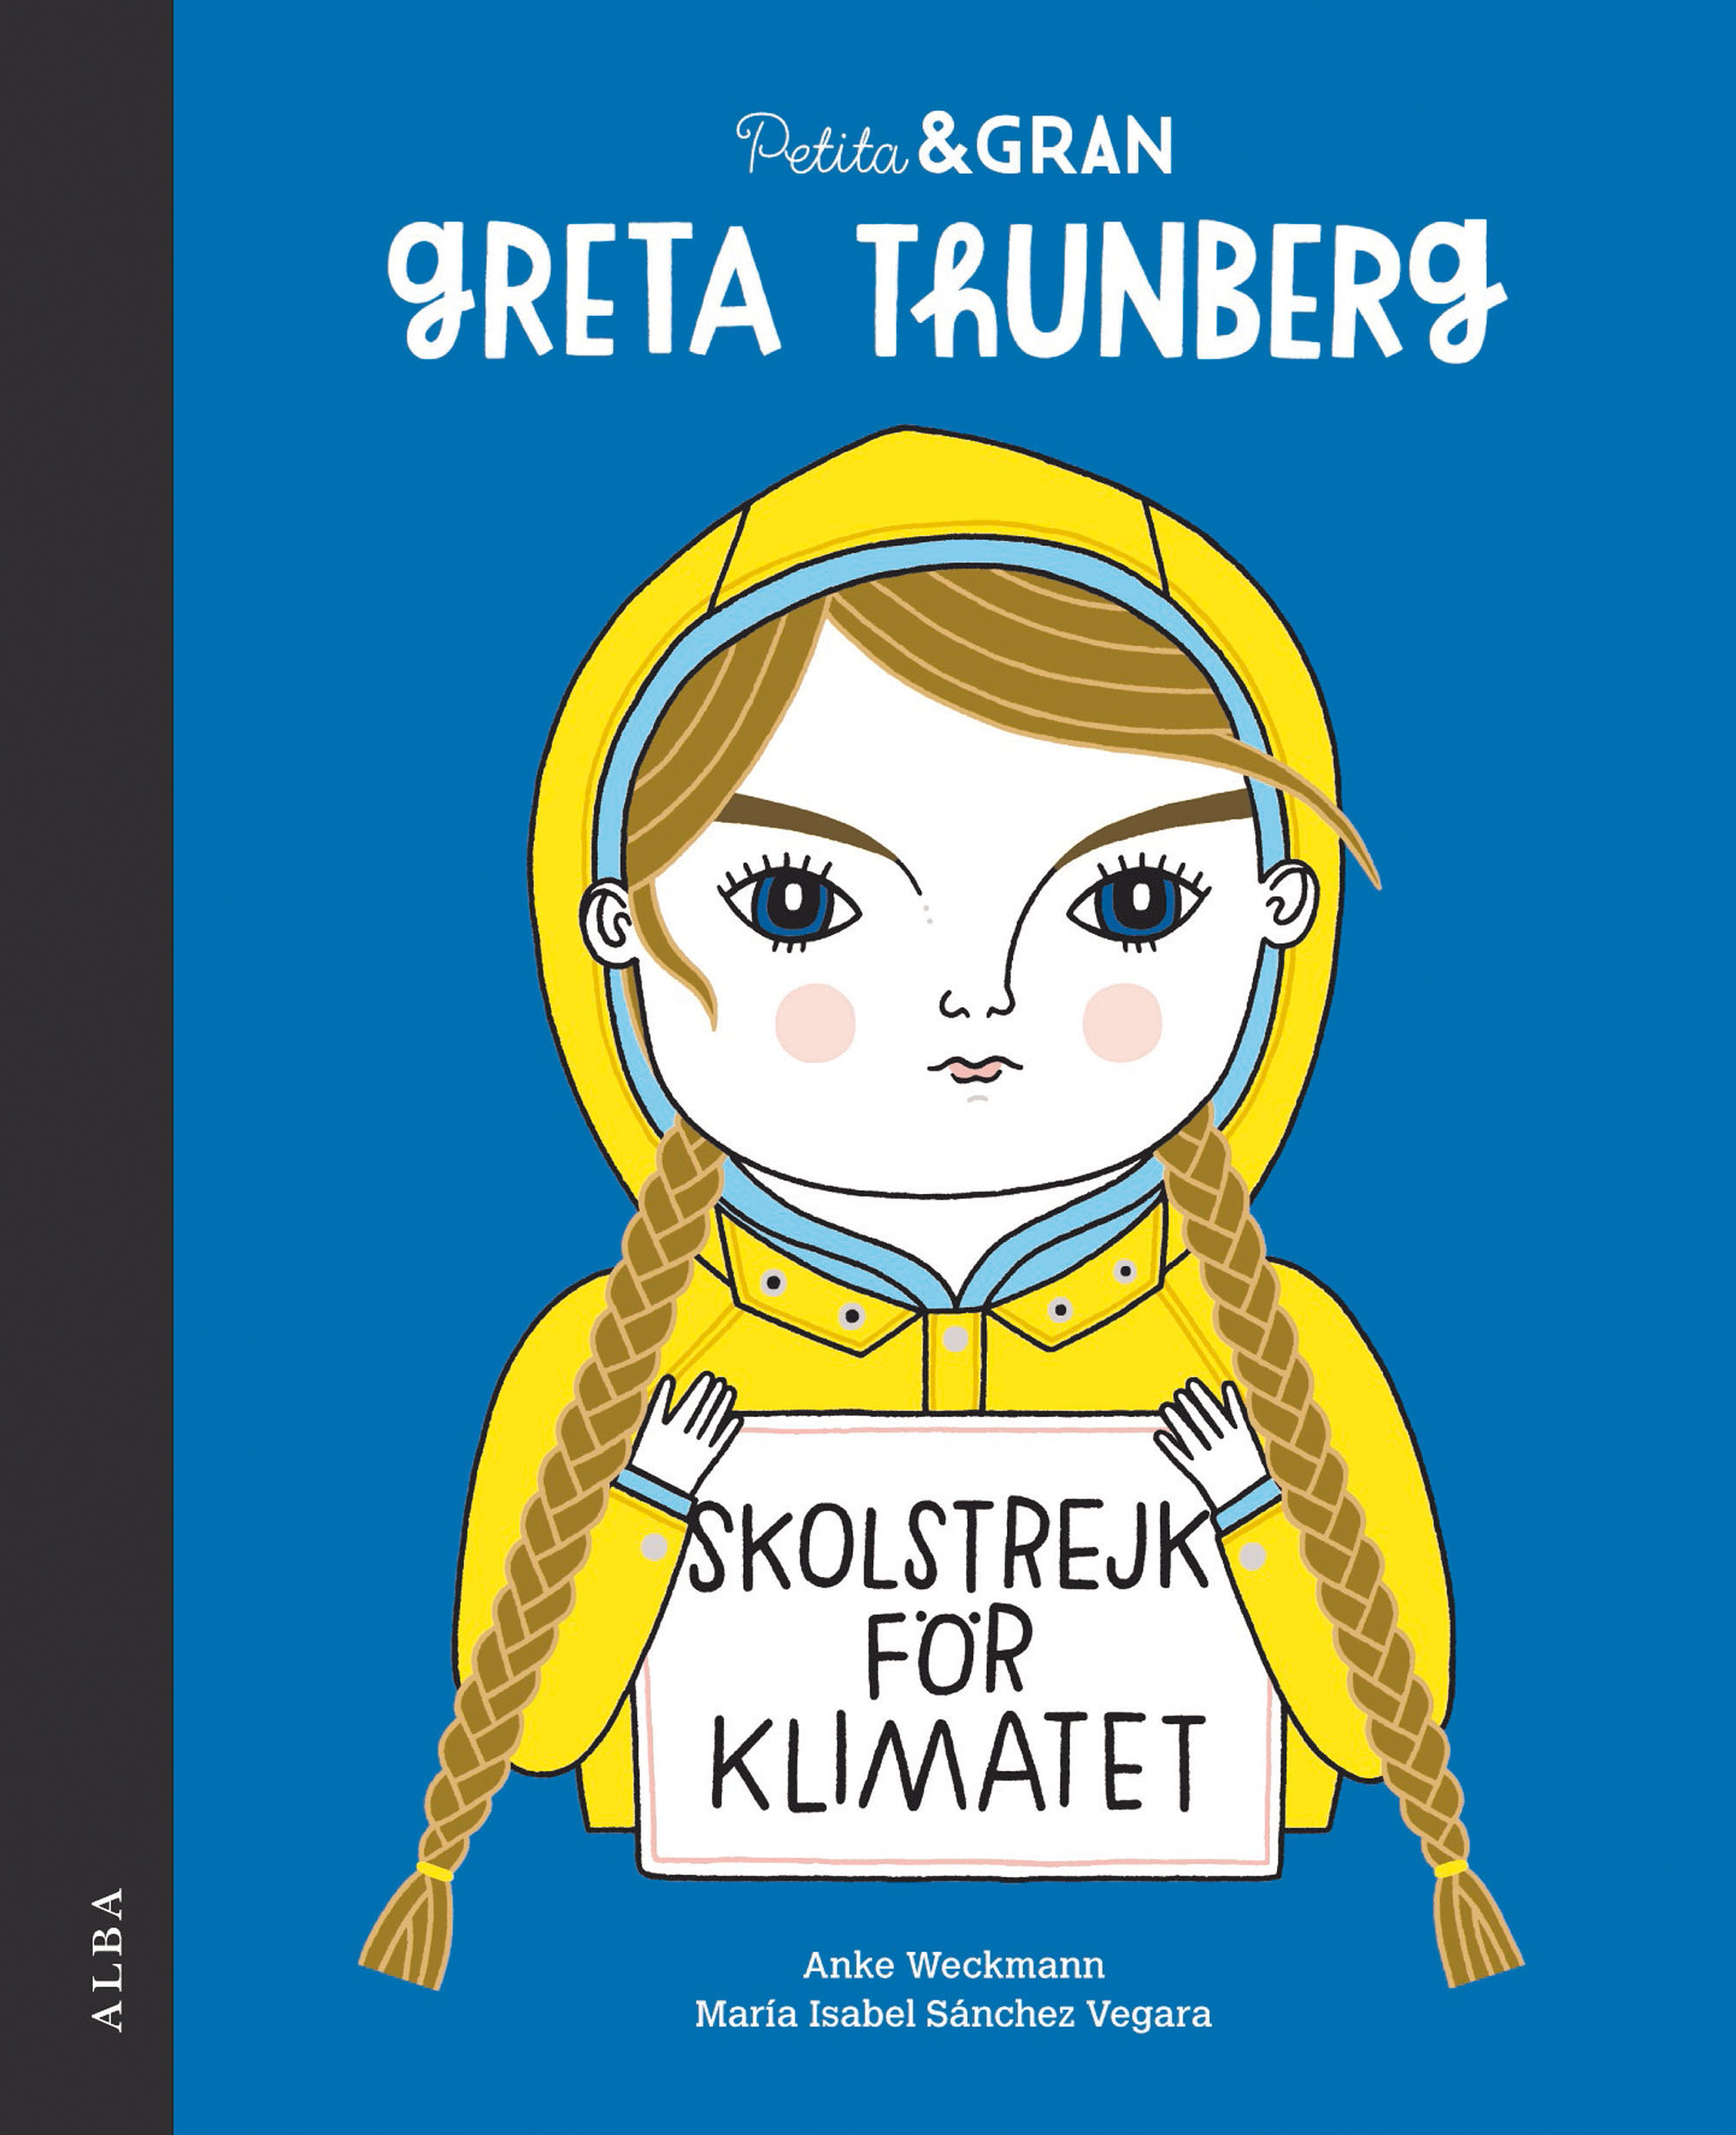 Petita & Gran Greta Thunberg (9788490656778)